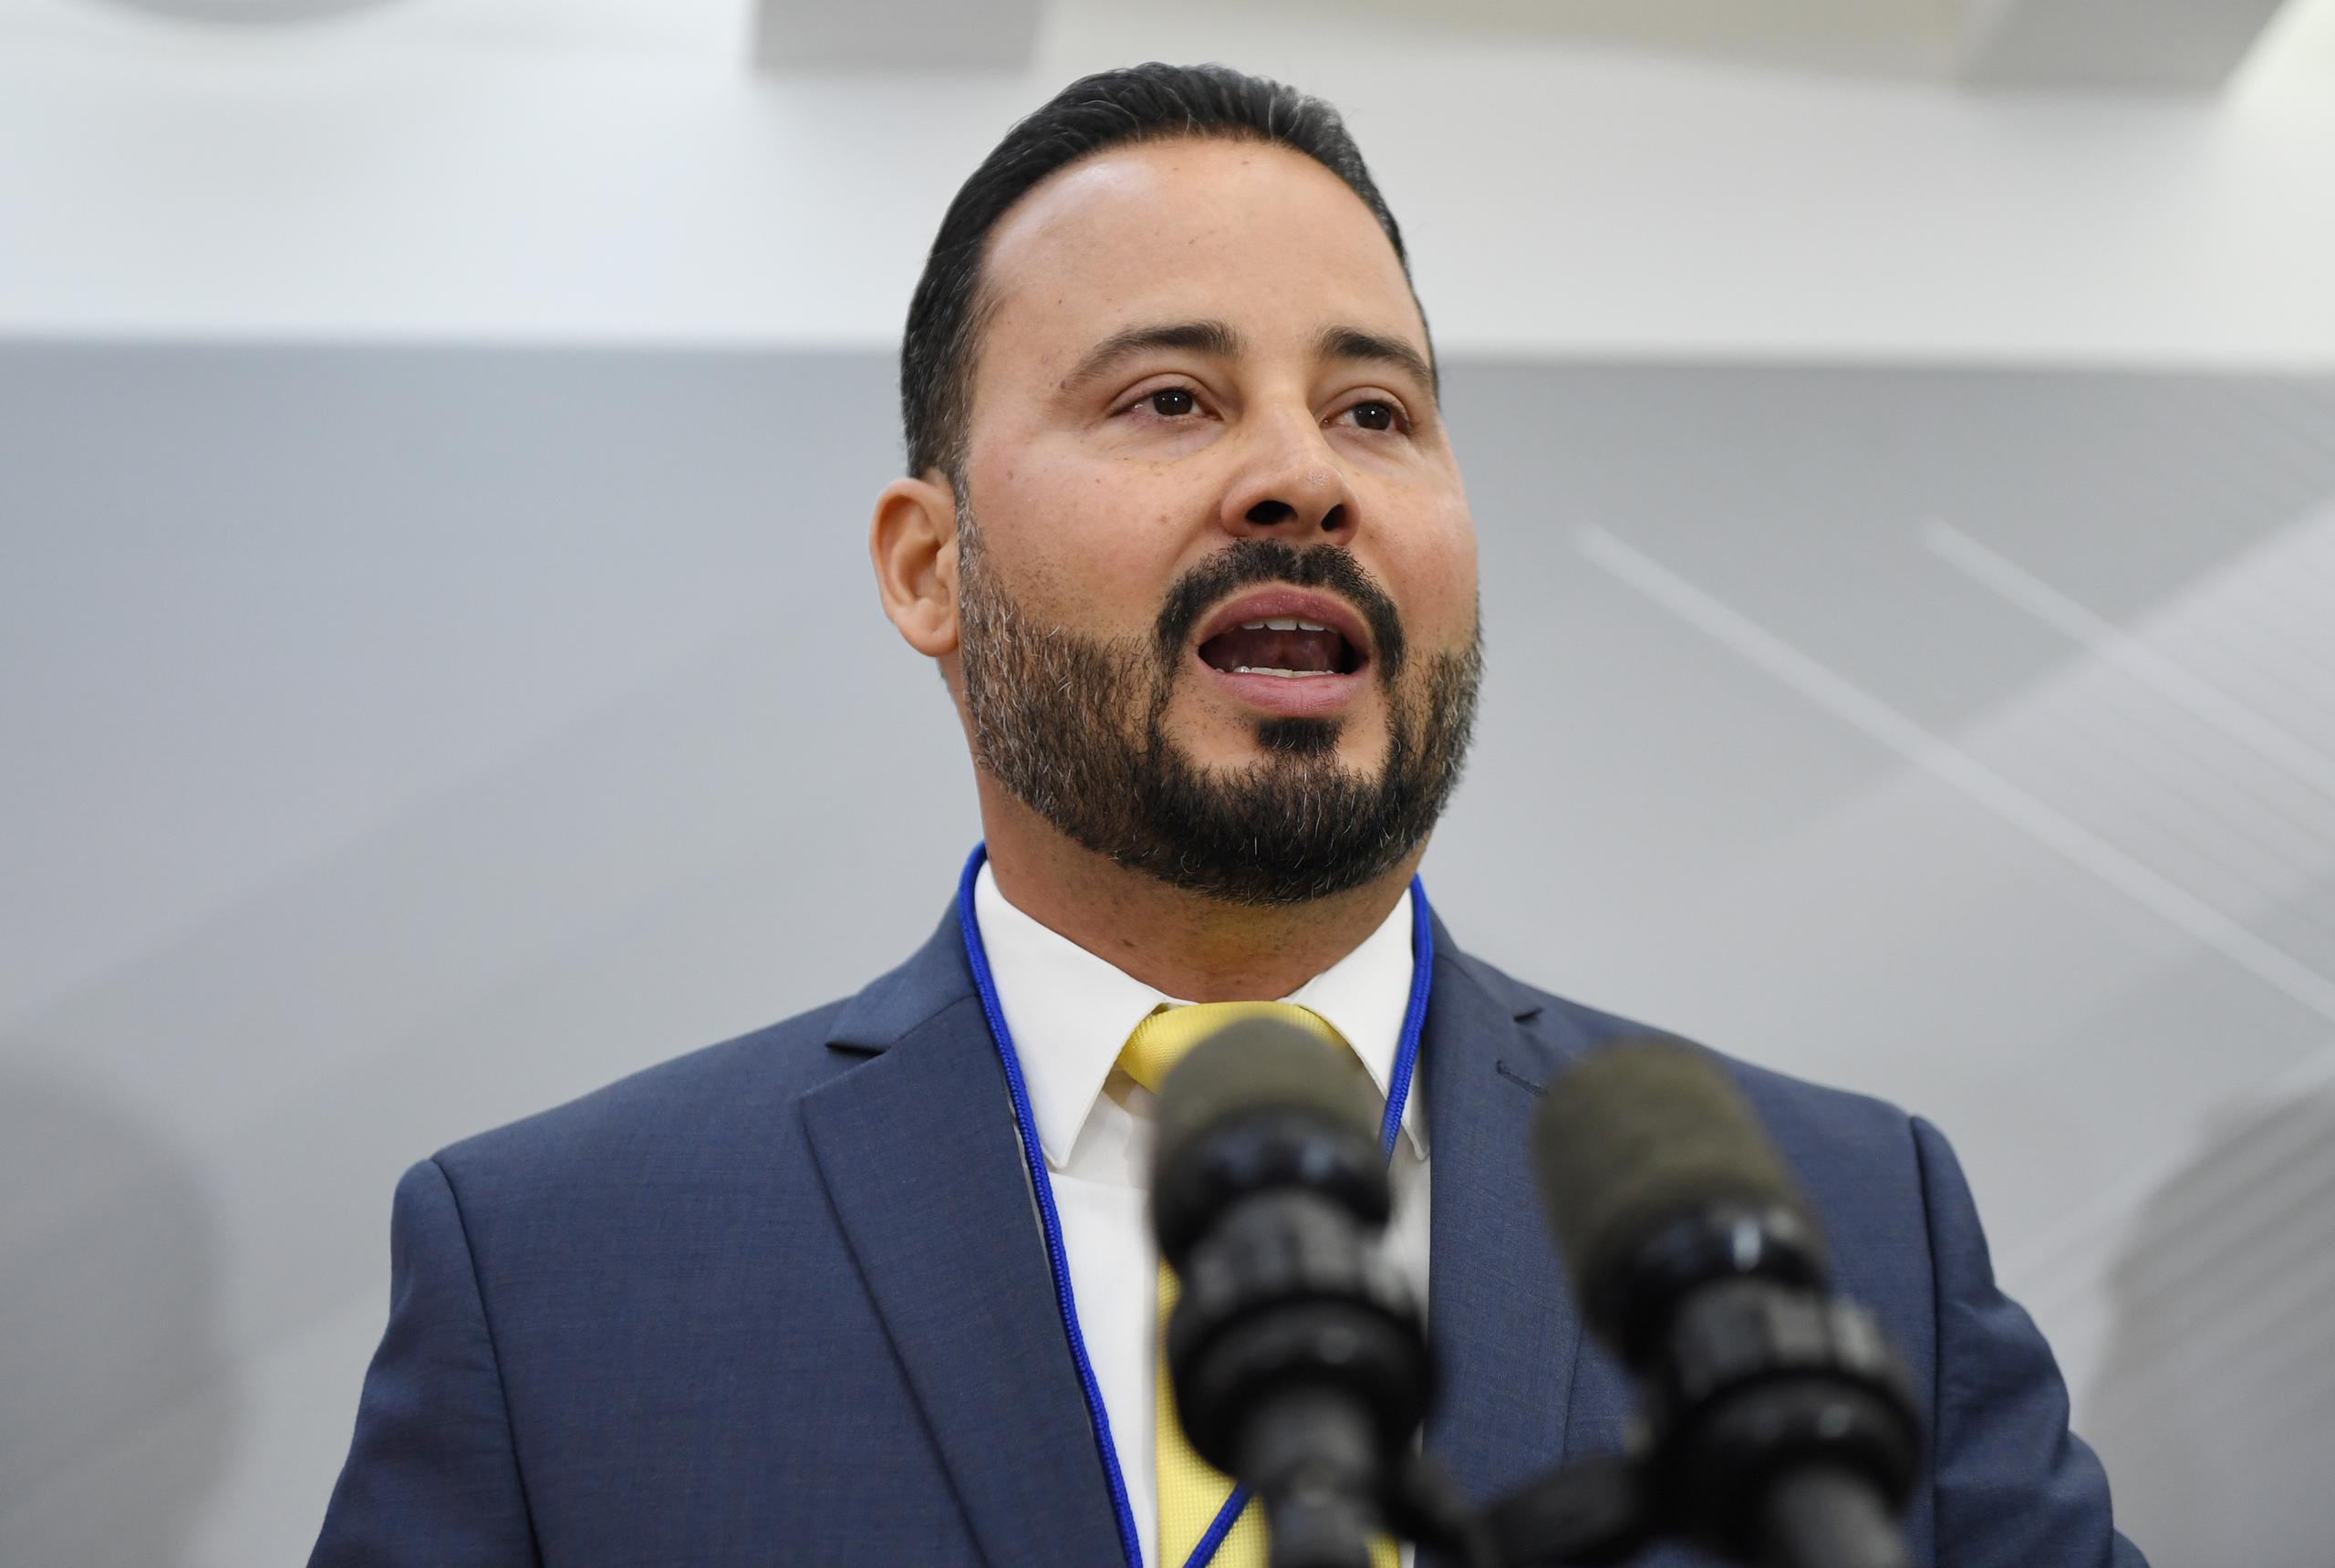 El alcalde de Villalba, Luis Javier Hernández, aludió a que a los municipios se les siguen añadiendo responsabilidades gubernamentales sin presupuesto.